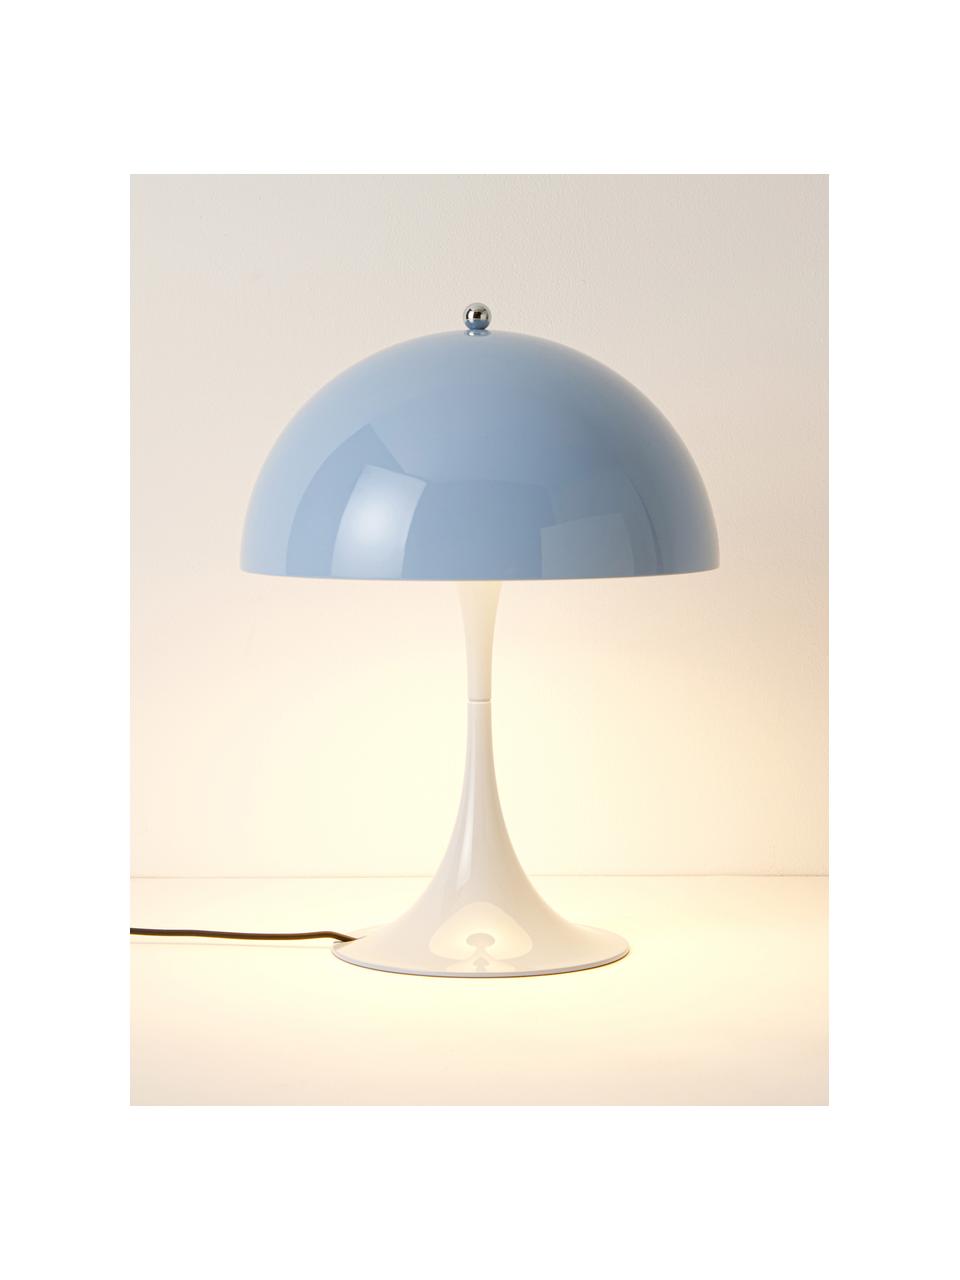 Lampa stołowa LED z funkcją przyciemniania Panthella, W 34 cm, Stelaż: aluminium powlekane, Jasnoniebieska stal, Ø 25 x 34 cm